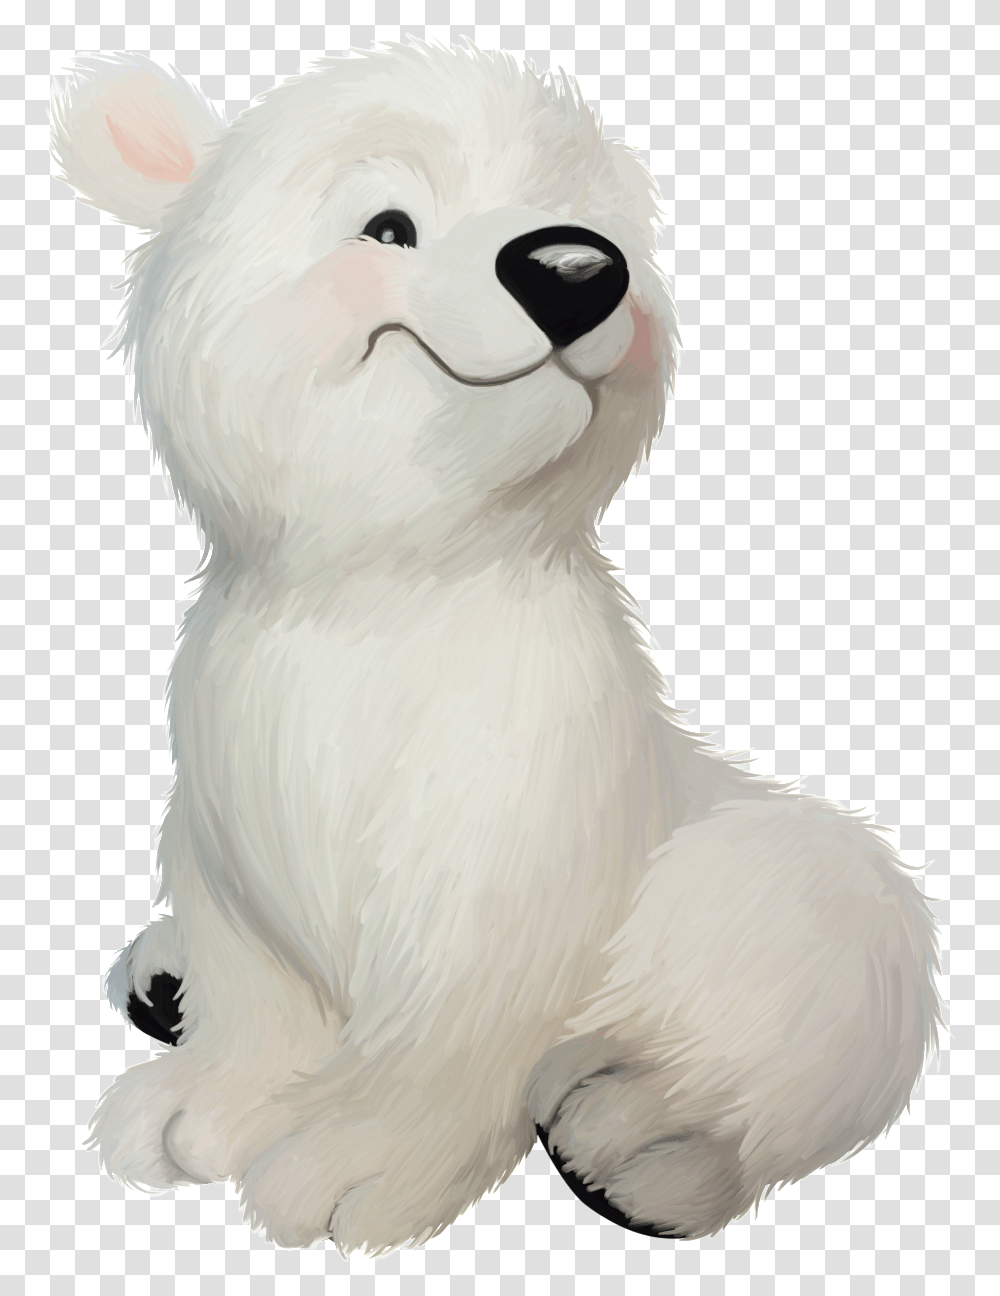 Este Oso Blanco Transparente Cartoon Polar Bear, Mammal, Animal, Bird, Chicken Transparent Png